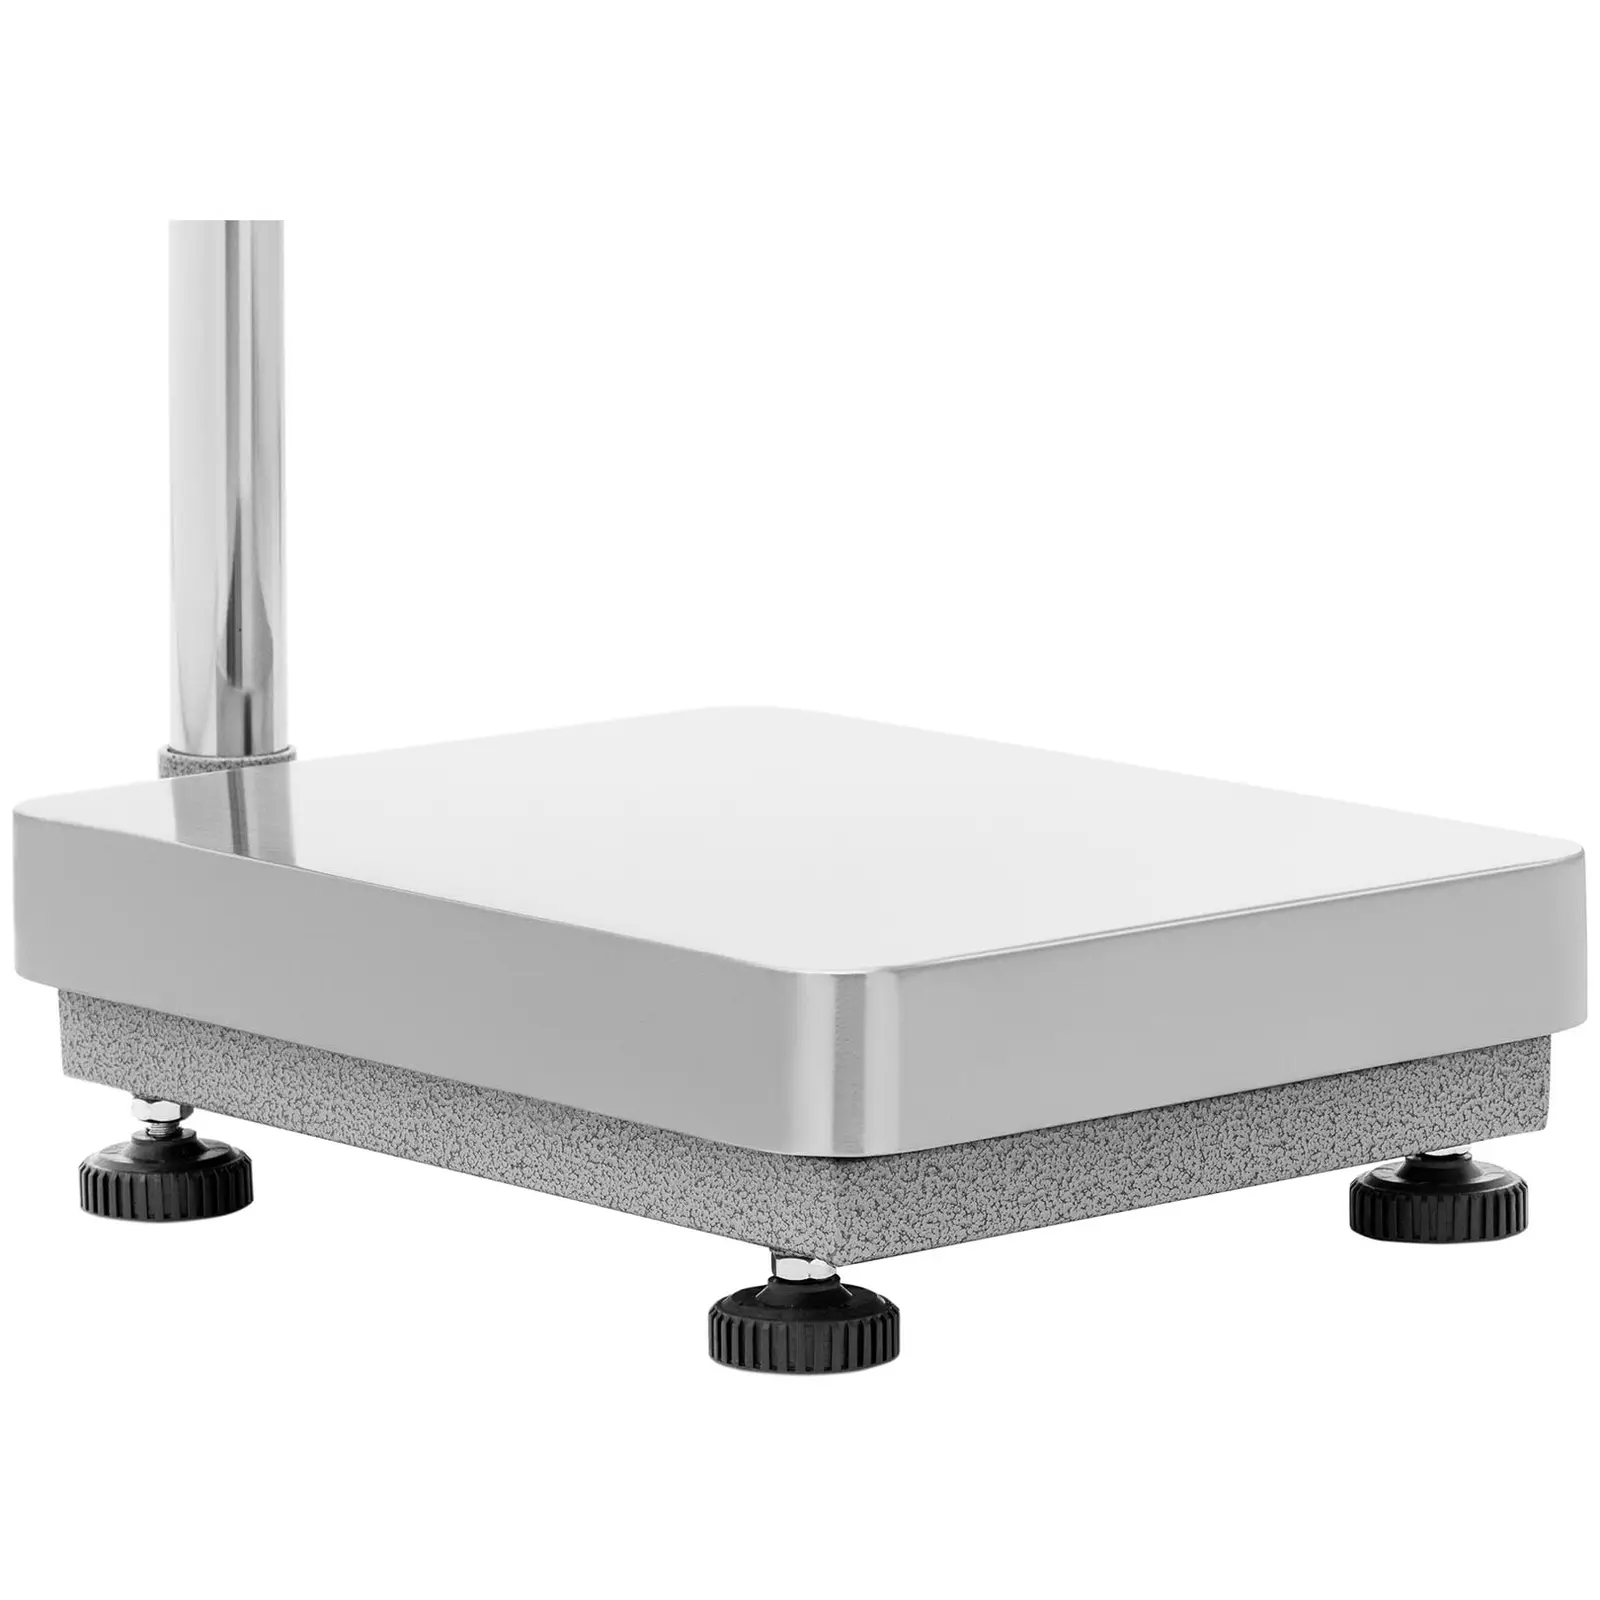 Waga platformowa - światełko ostrzegawcze - 30 kg / 0,001 kg - 300 x 400 mm - kg/lb